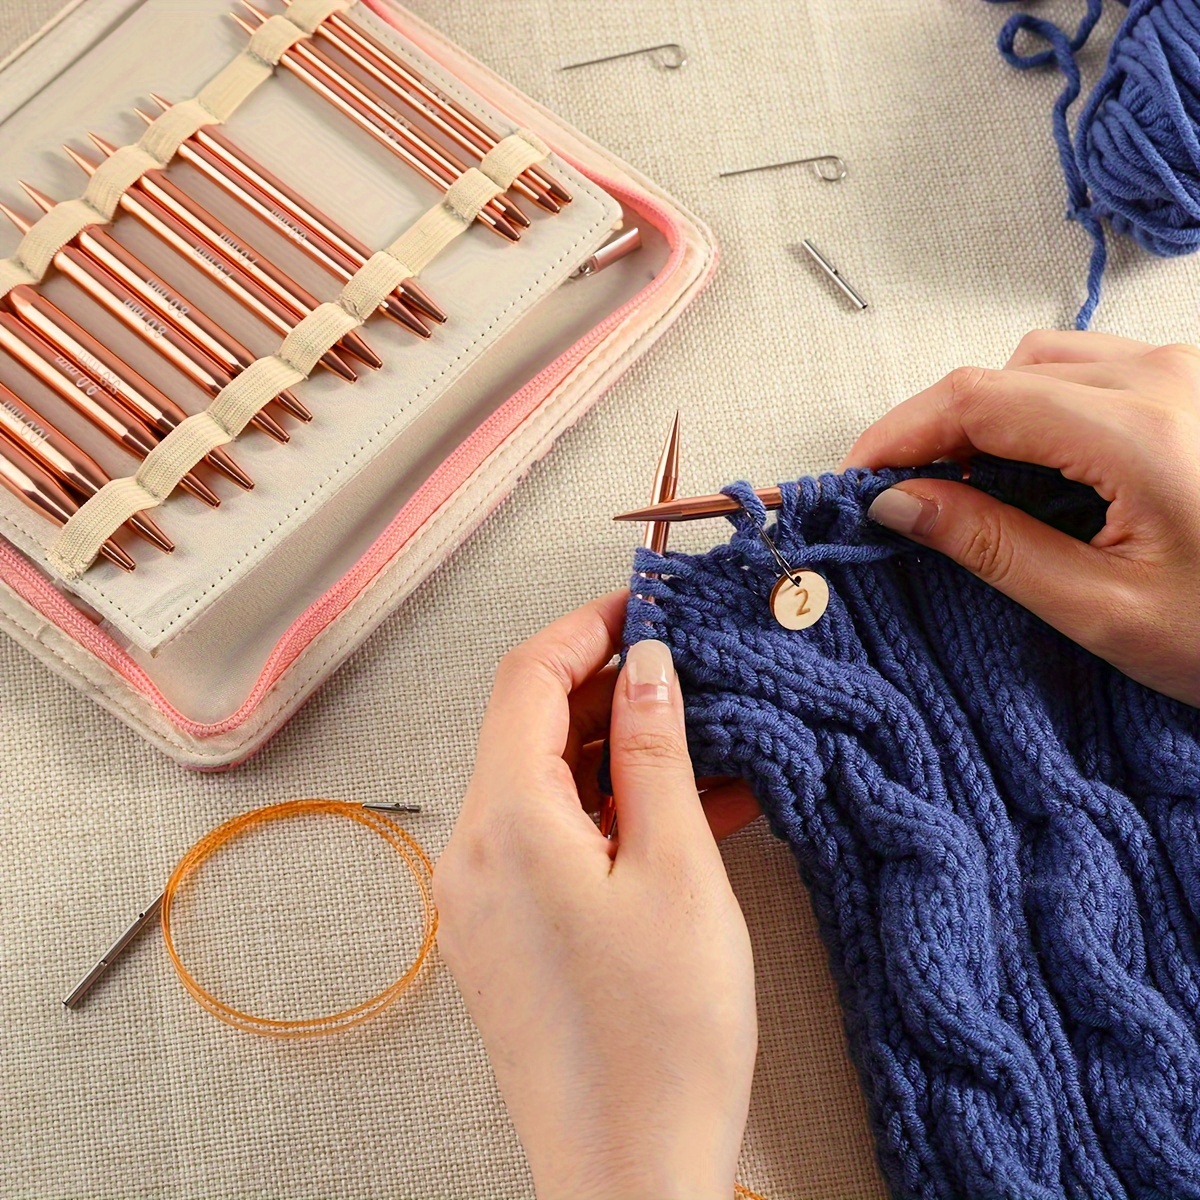 Hobby Supplies Knitting, Hobby Needlework Tools